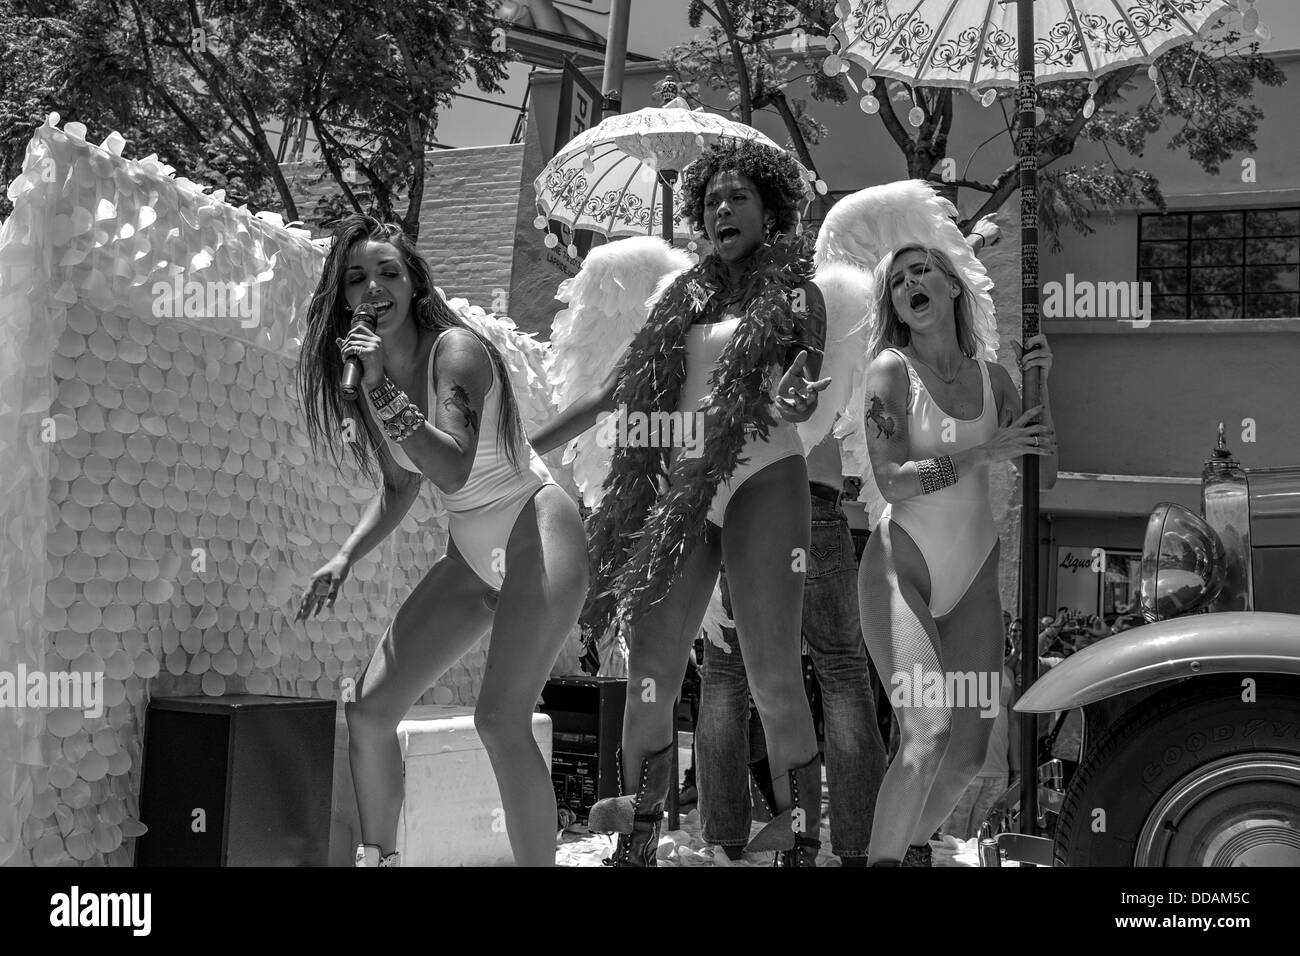 Los Angeles Gay Pride Parade Event Stock Photo